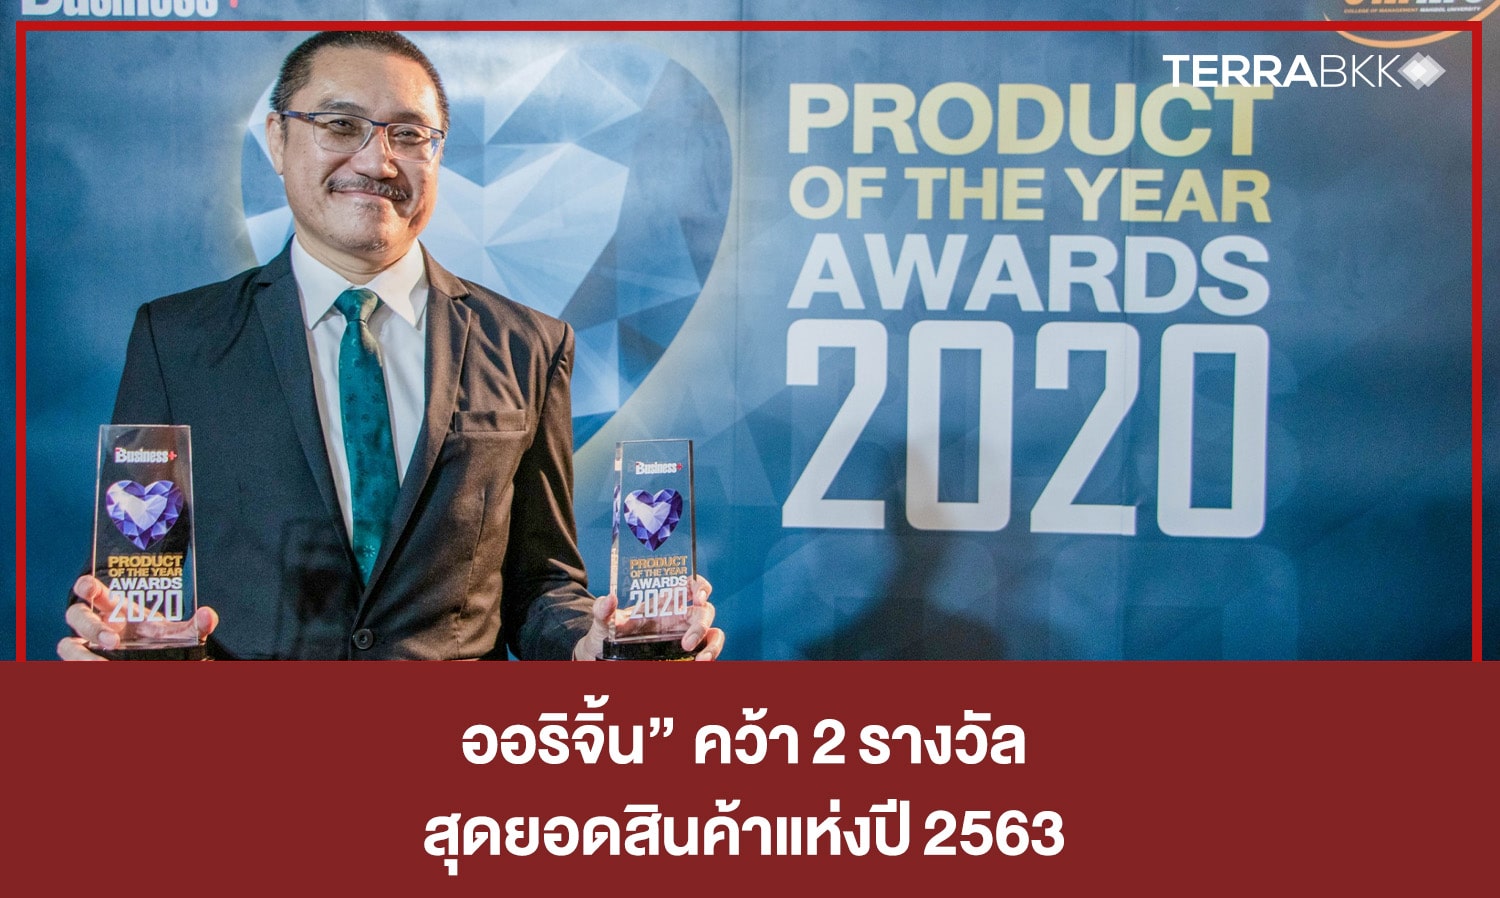 ออริจิ้น” คว้า 2 รางวัล “PRODUCT OF THE YEAR AWARDS 2020” สุดยอดสินค้าแห่งปี 2563 